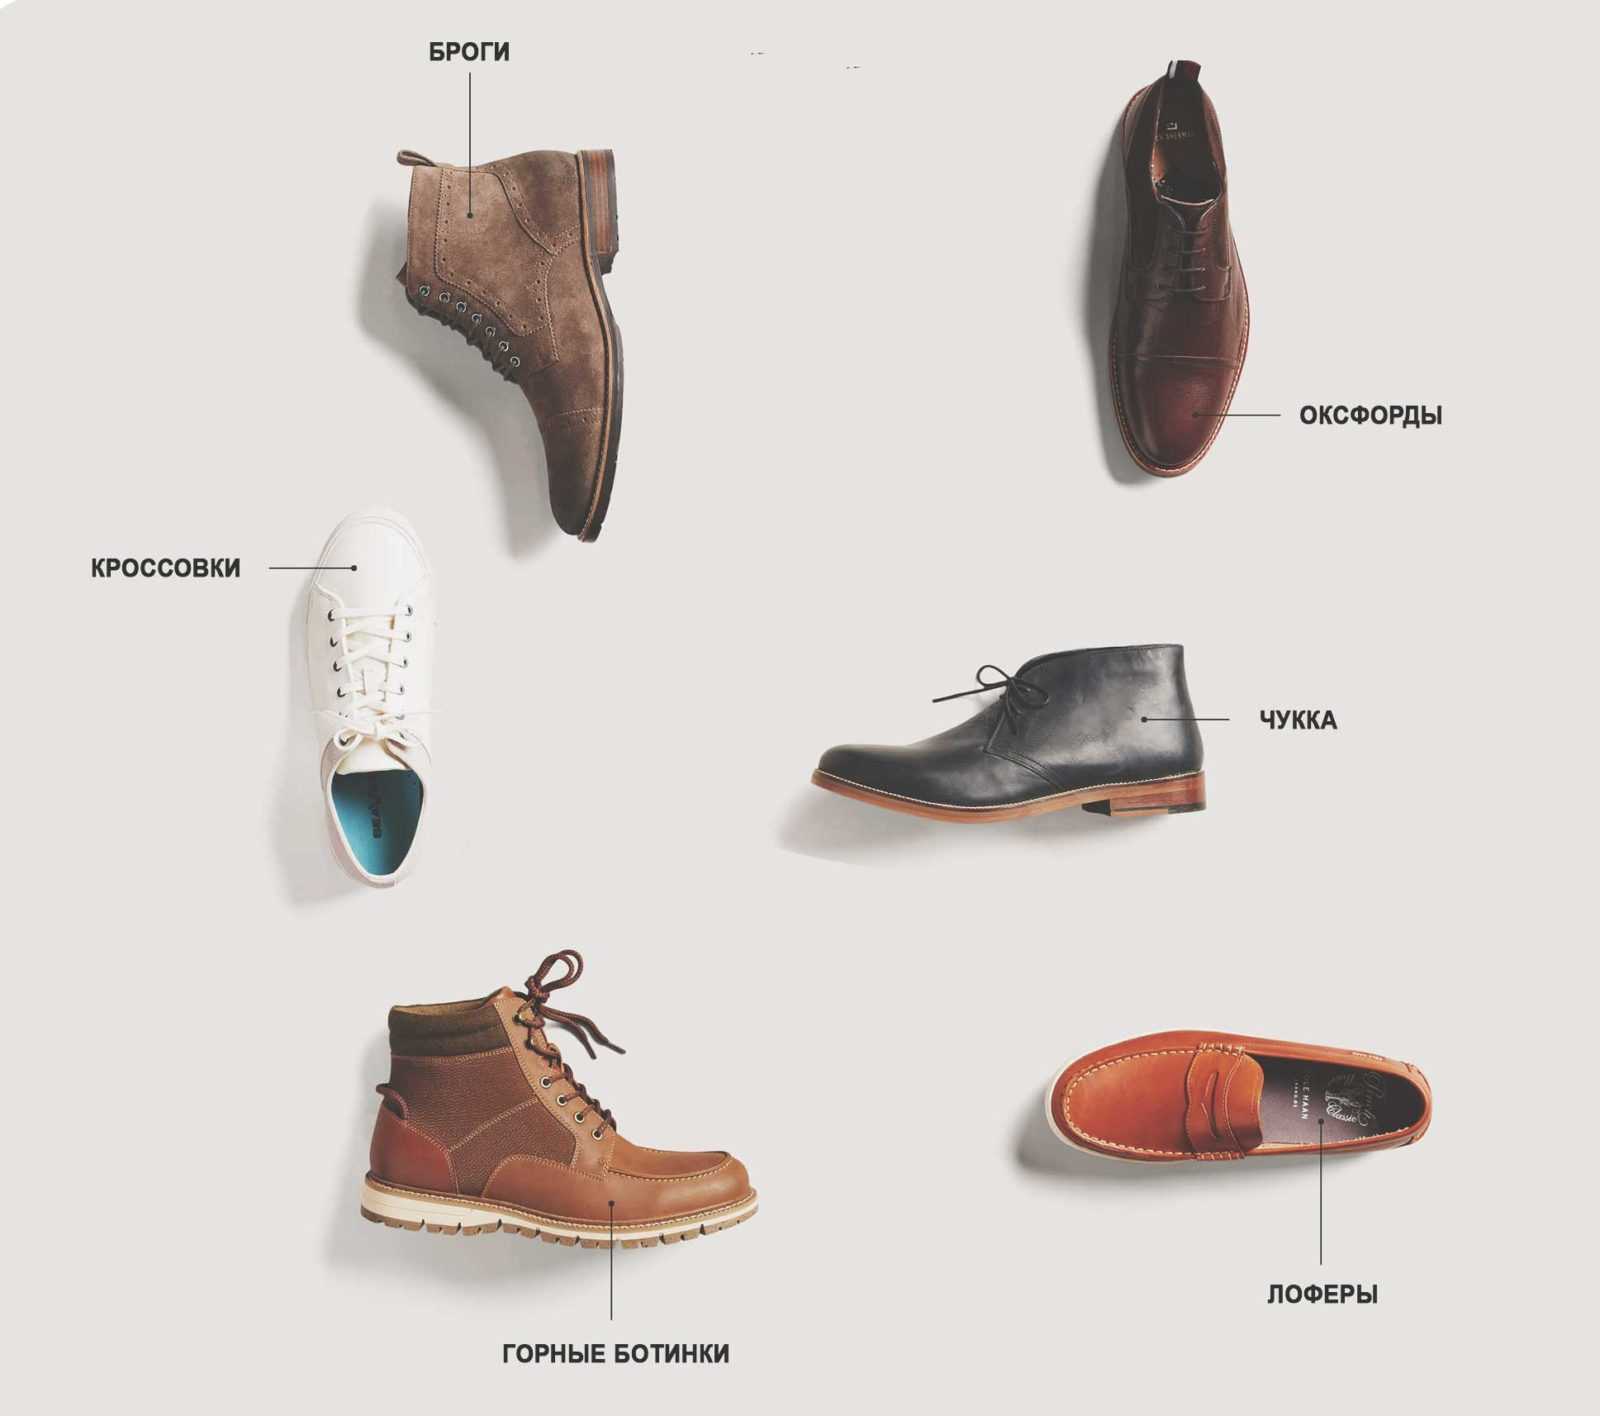 Что значит мужская обувь. Формы мужской обуви. Название мужских ботинок. Мужская обувь названия моделей. Классификация мужской обуви.